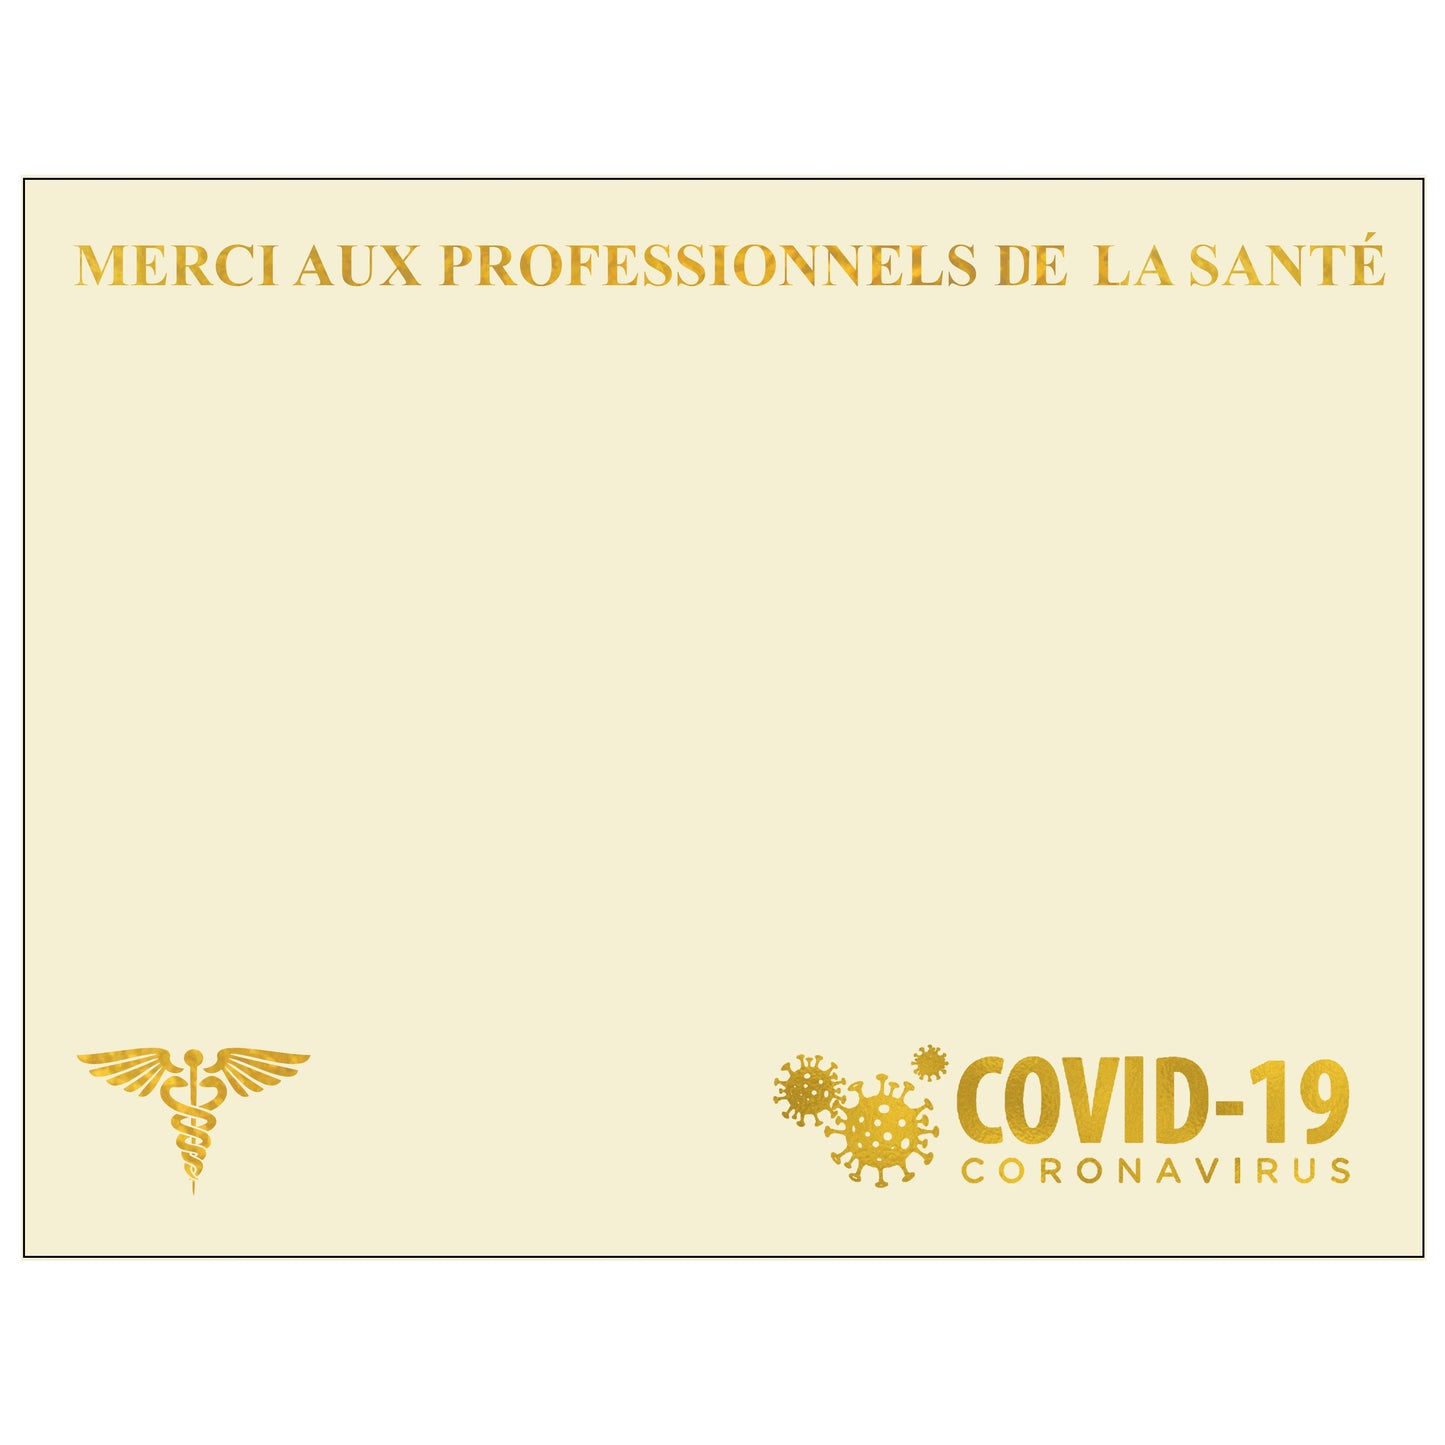 St. James® Premium Weight "Professionnels de la santé" Certificates, Gold Foil, Ivory, 65 lb, 8.5 x 11", Pack of 25